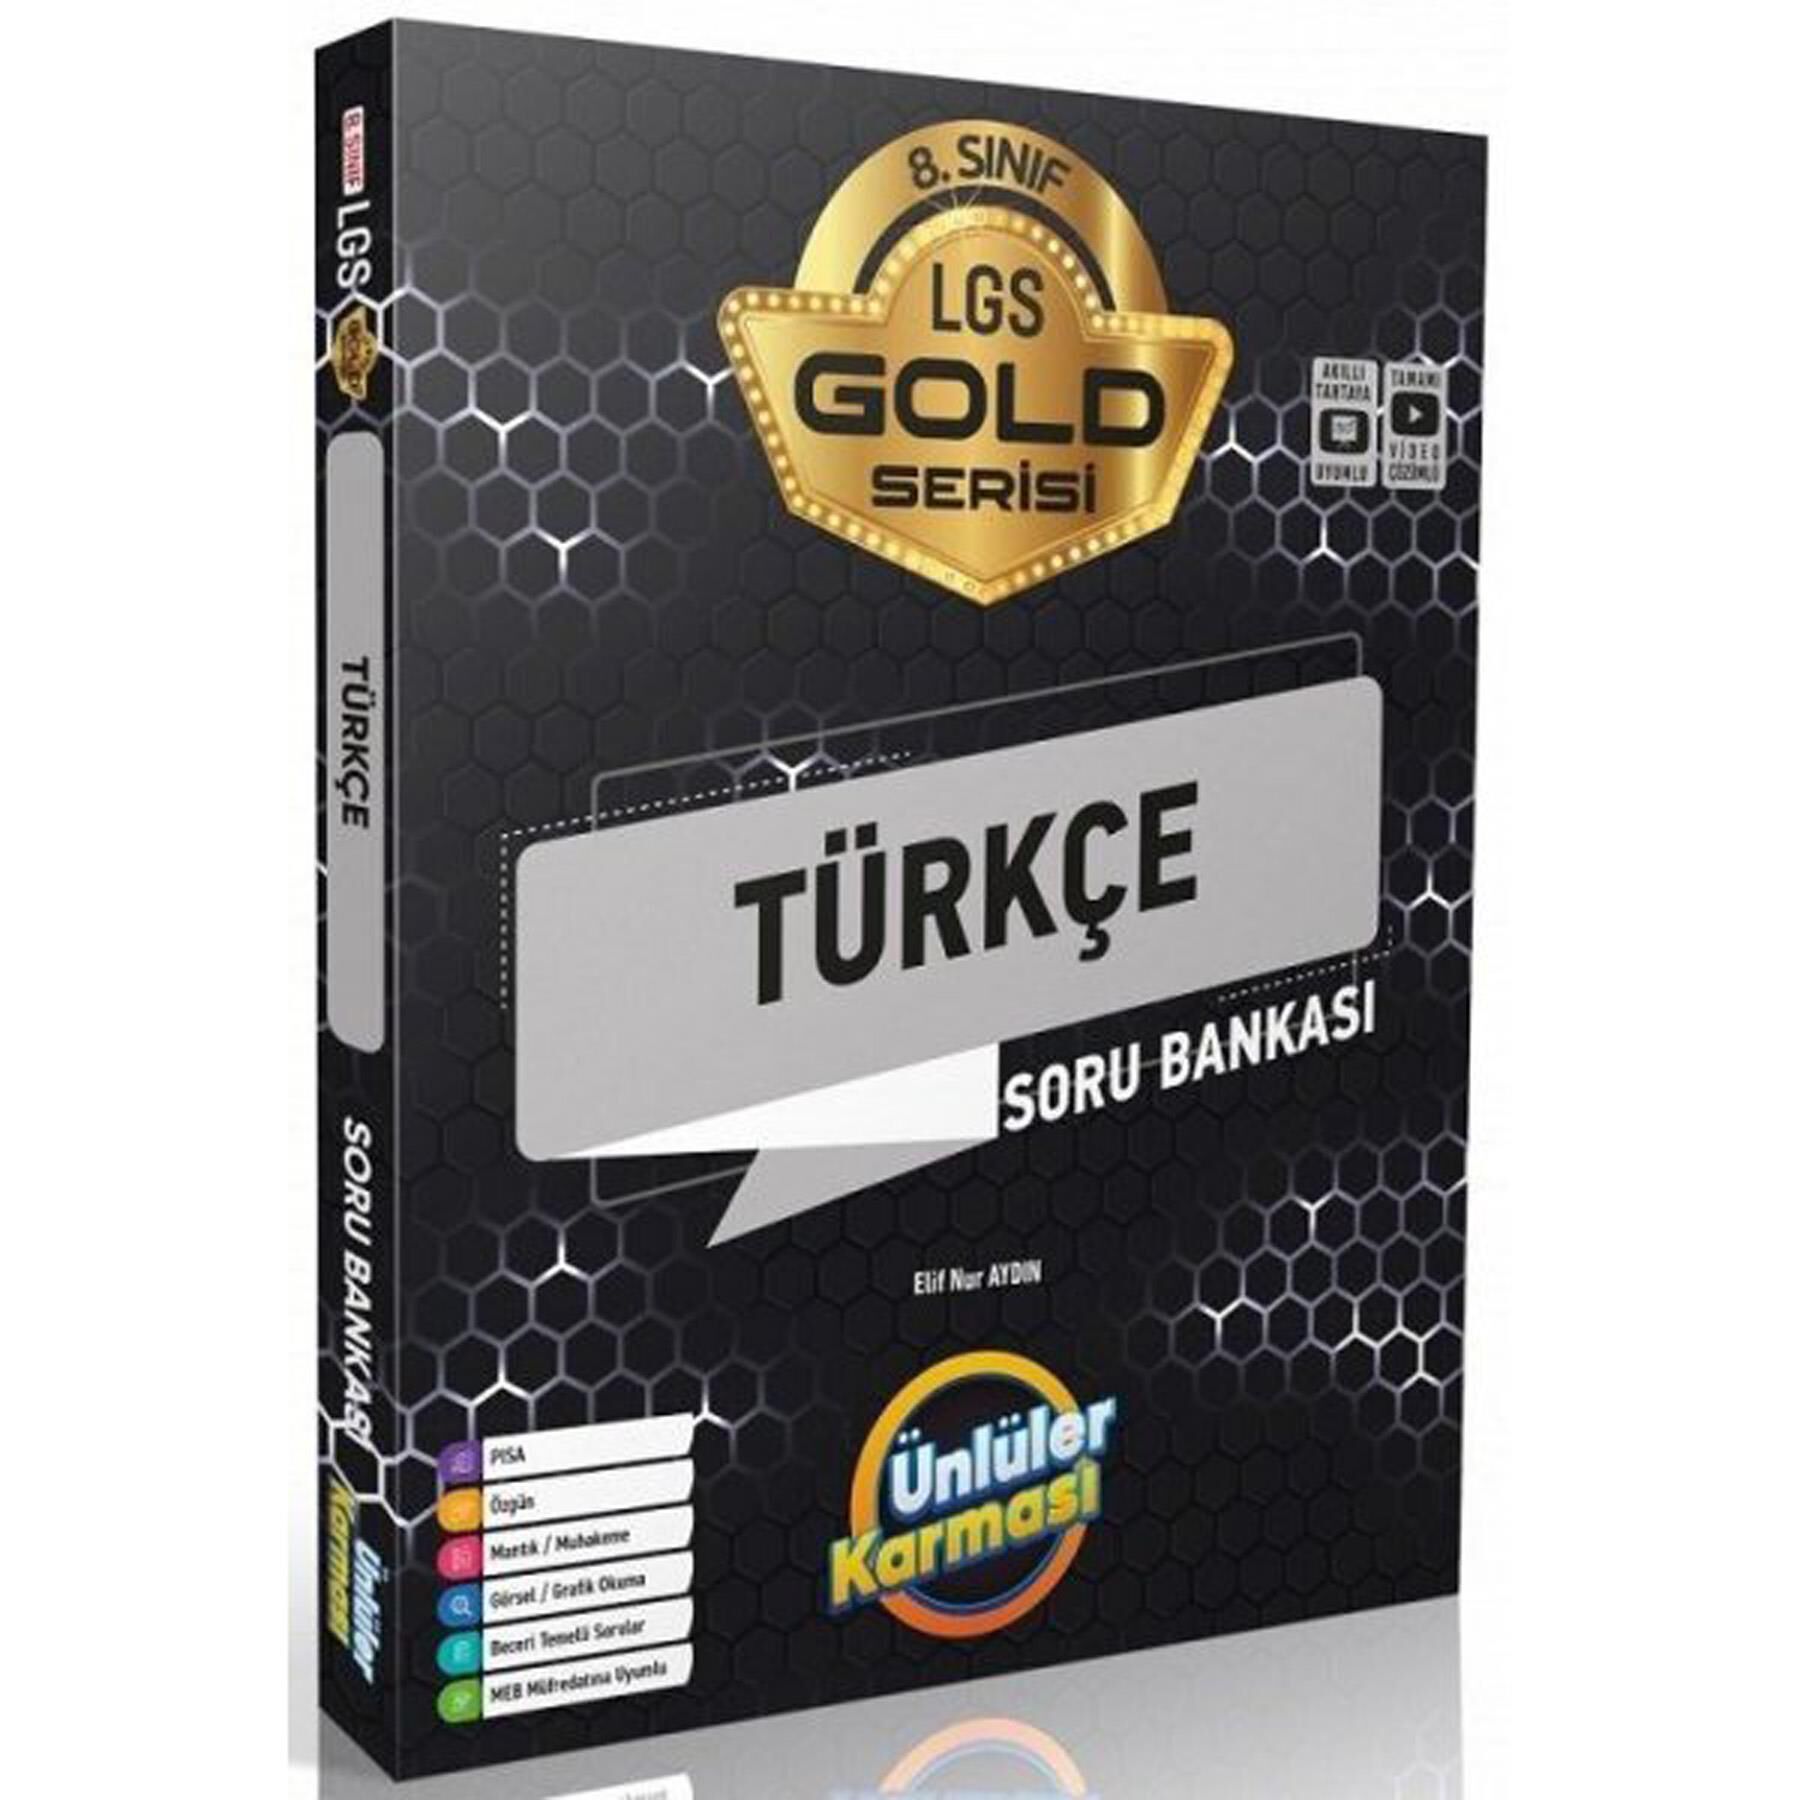 Ünlüler 8.Sınıf Gold Türkçe Soru Bankası